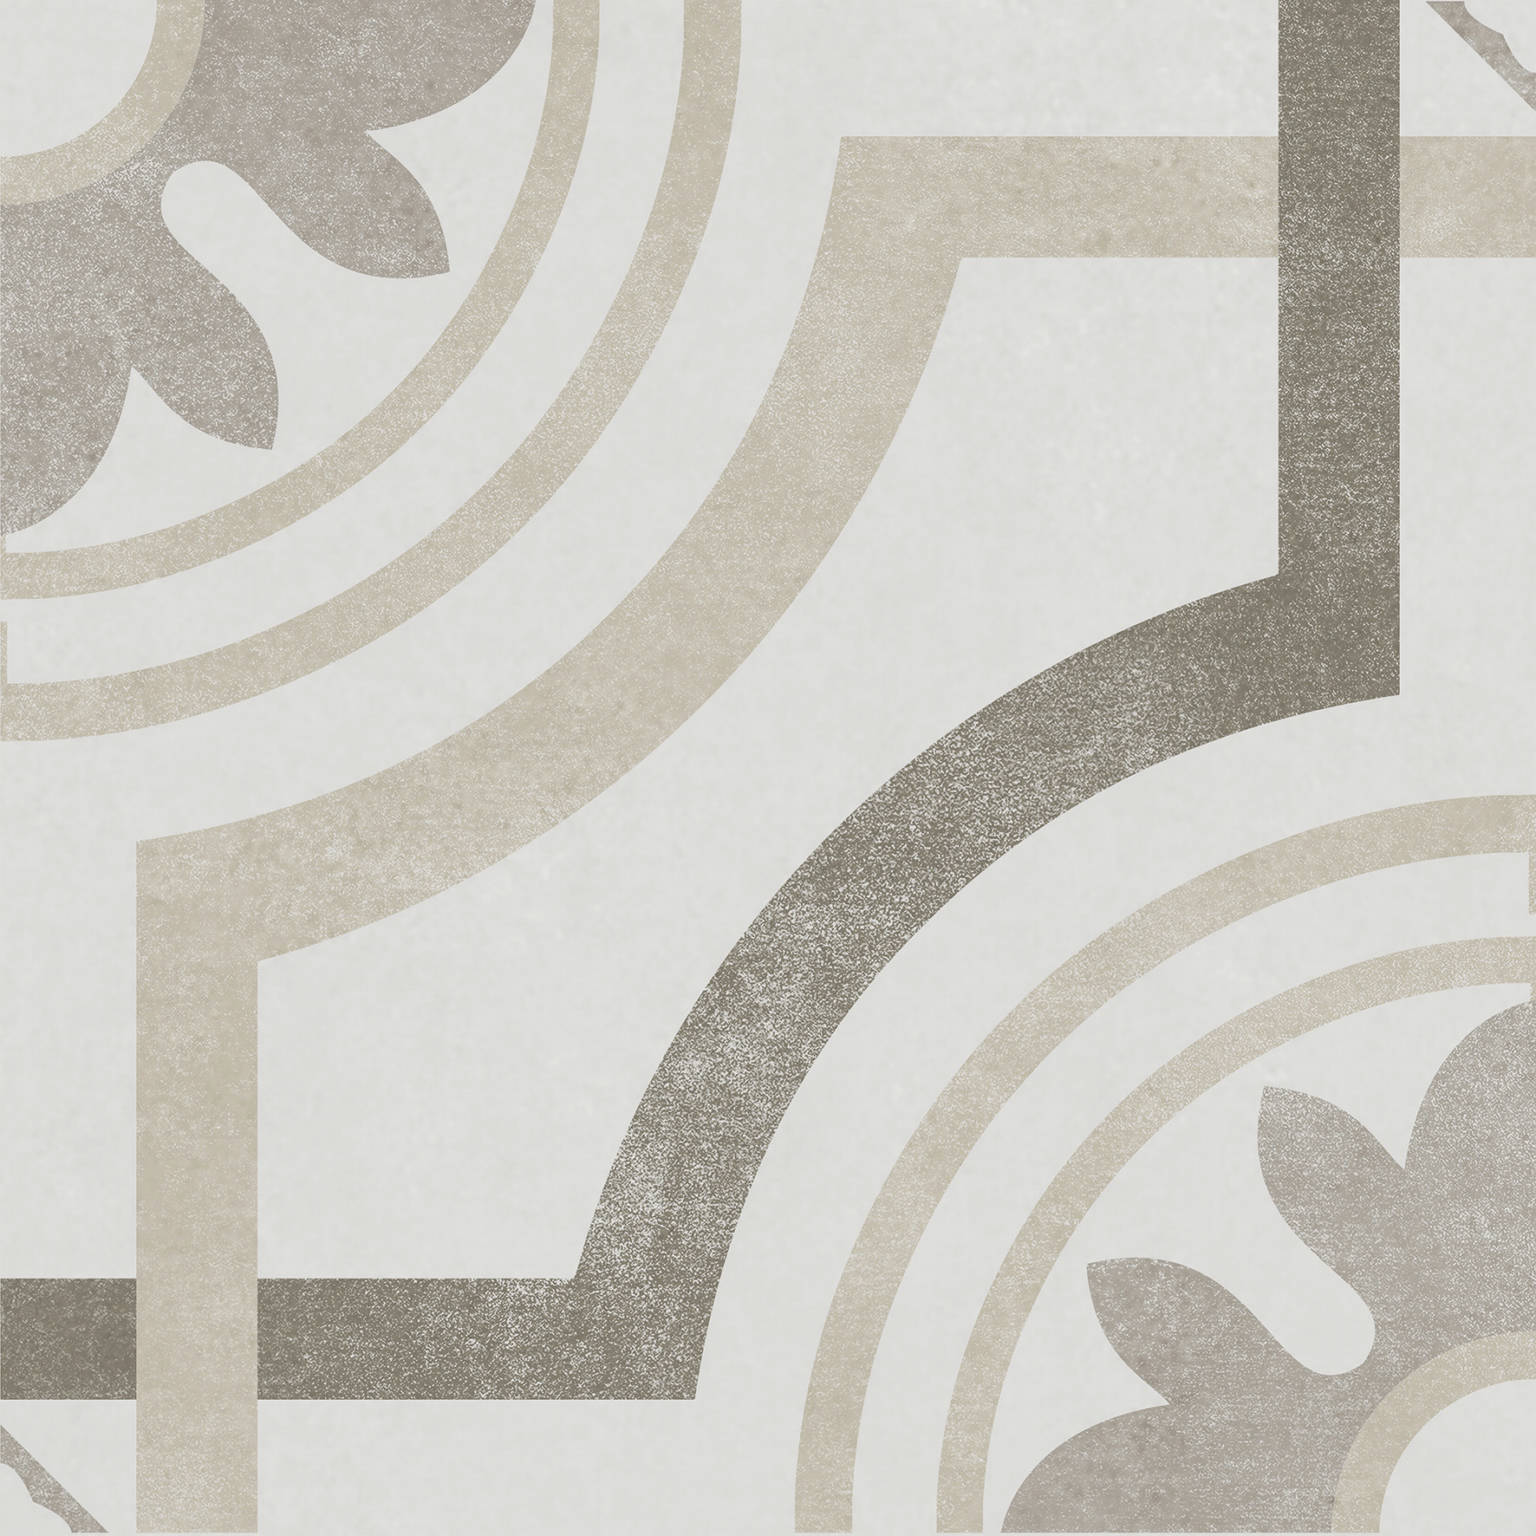 Onis Beige | General Ceramic Tiles